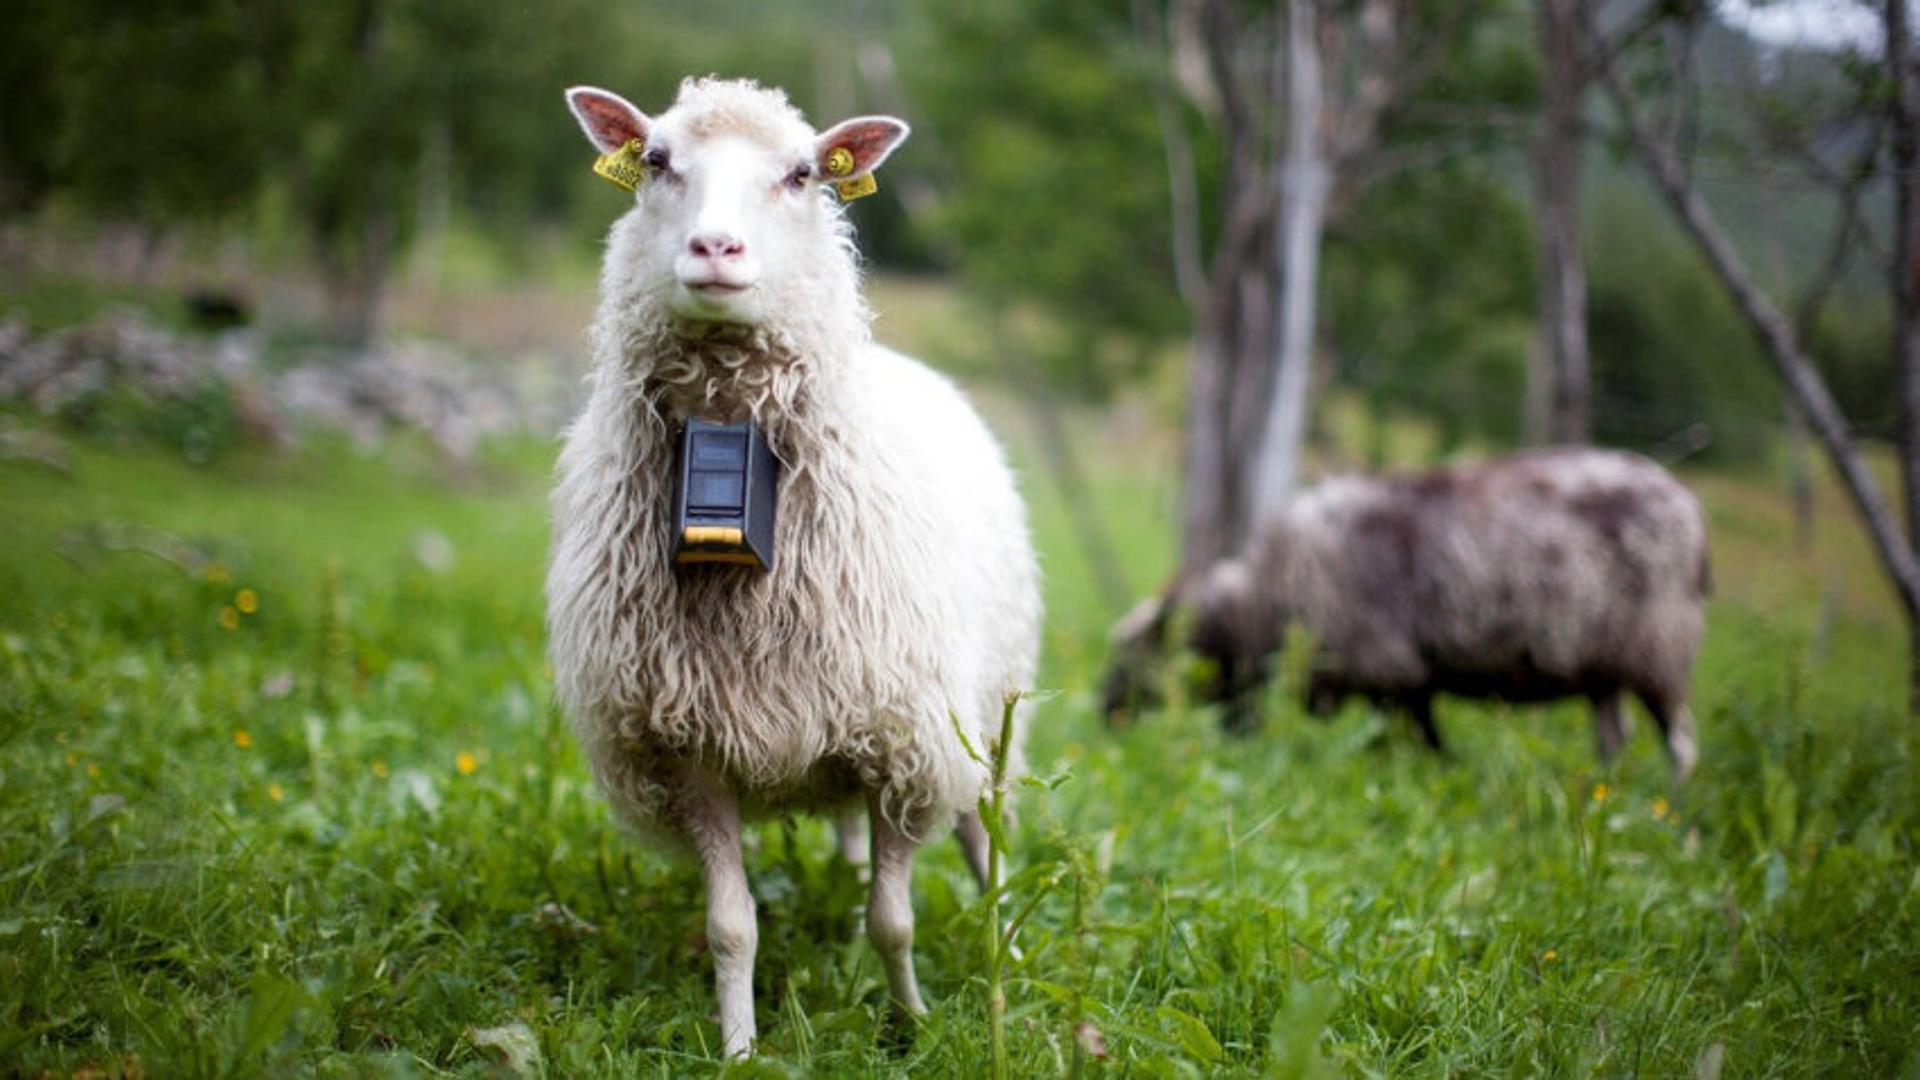 Sheep wearing nofence collar looking at camera